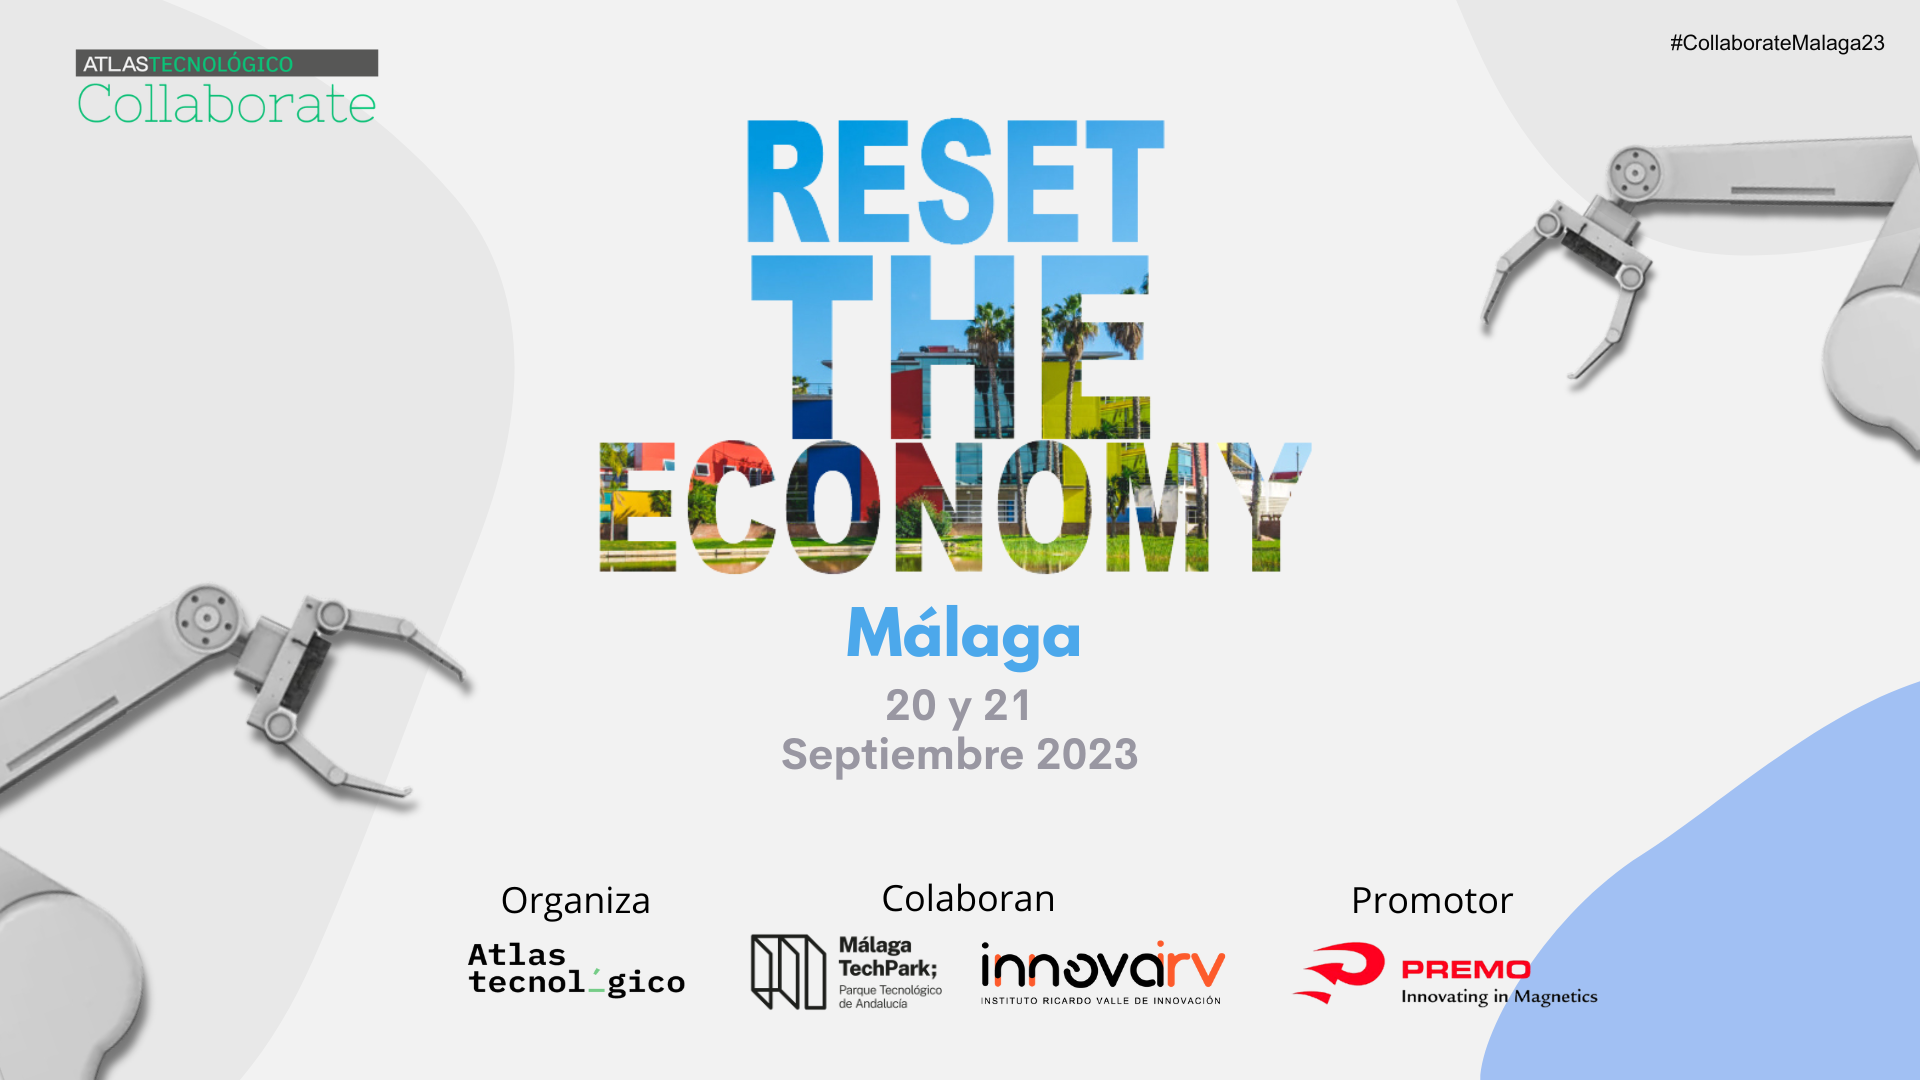 Atlas Tecnológico abre una parte del Collaborate Reset the Economy al ecosistema de innovación de Málaga